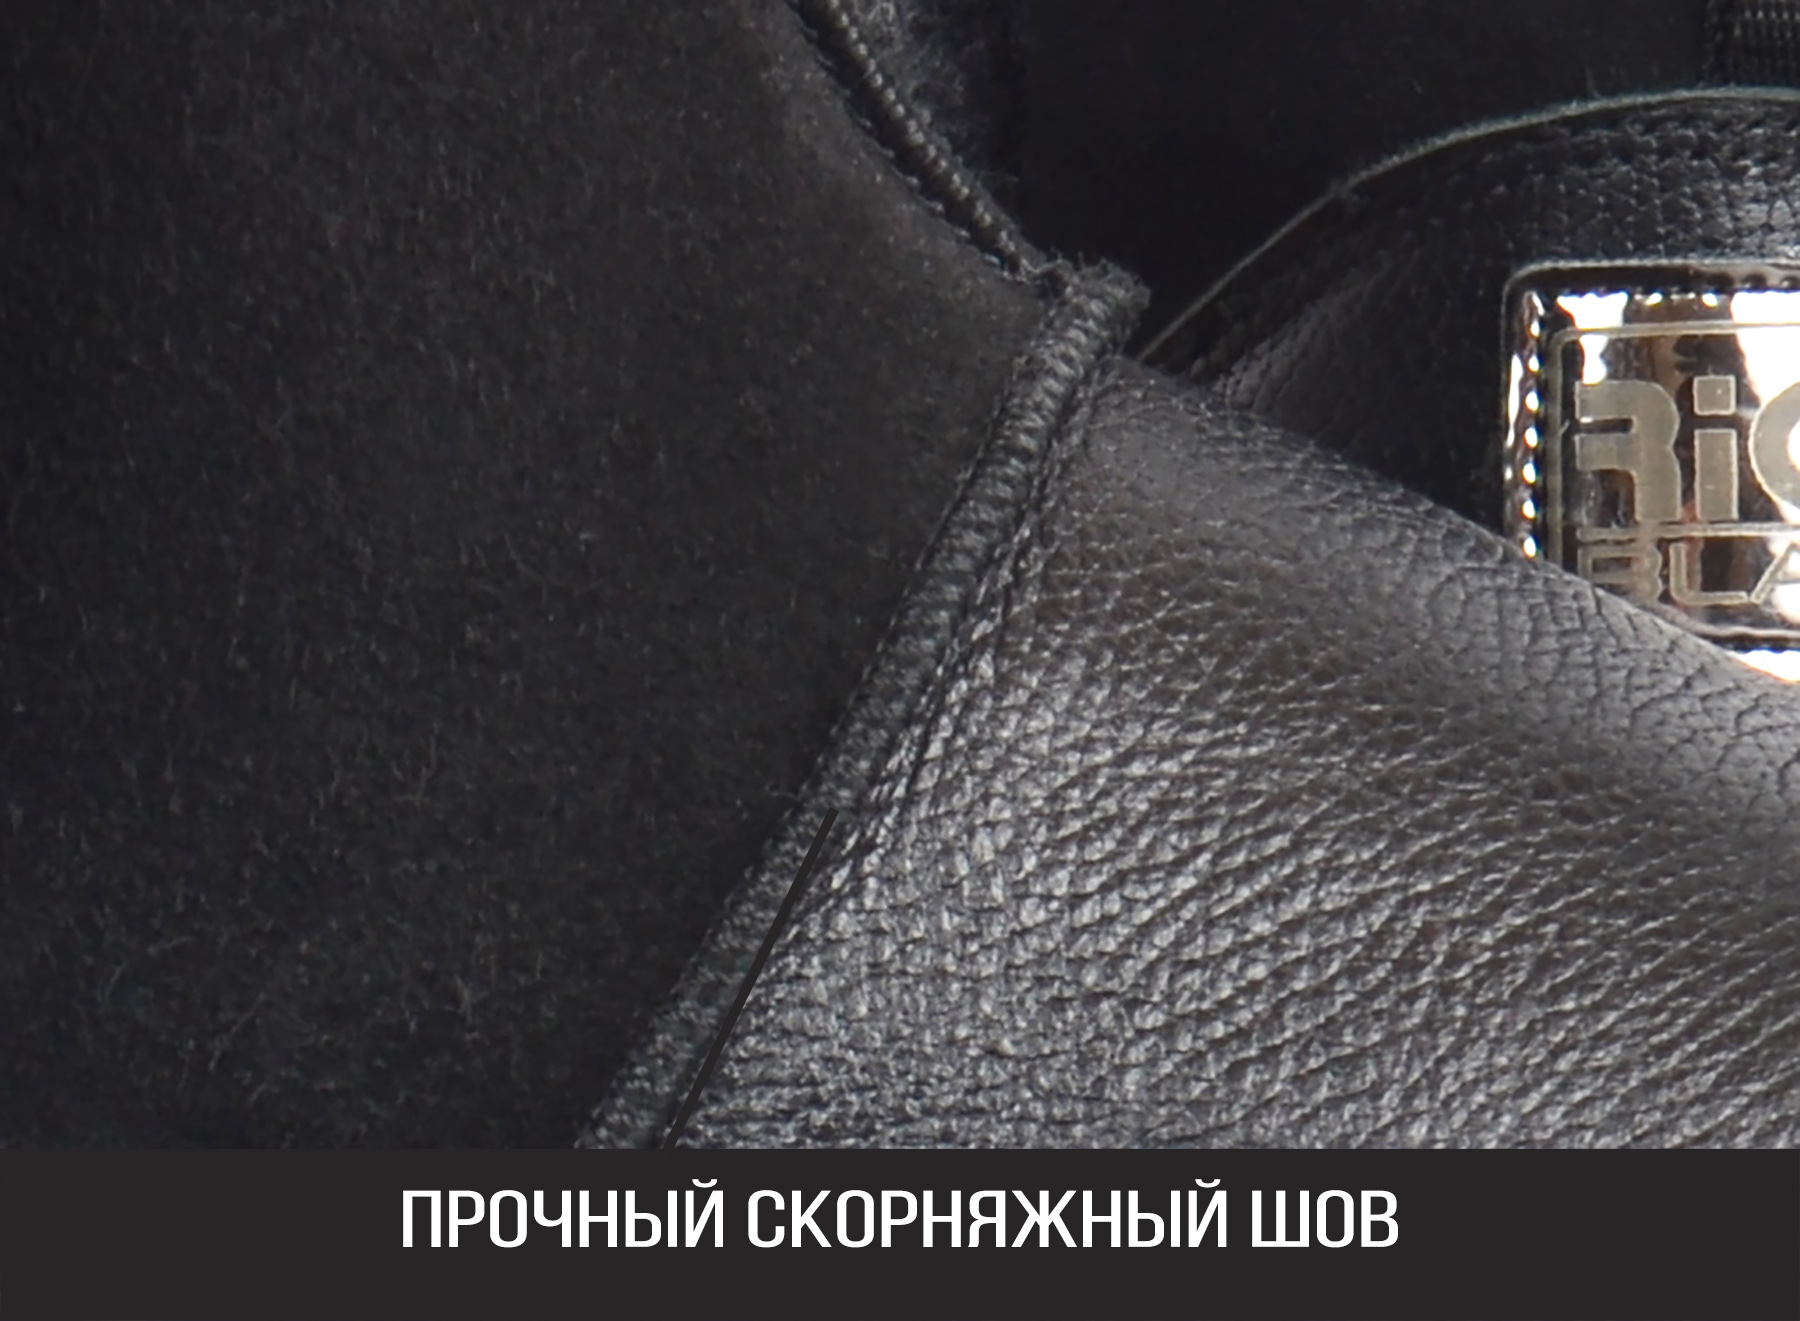 Скорняжный шов надежно скрепляет детали мужских кожаных угги ТМ Richi Black с натуральным мехом. Купить мужские угги в Украине